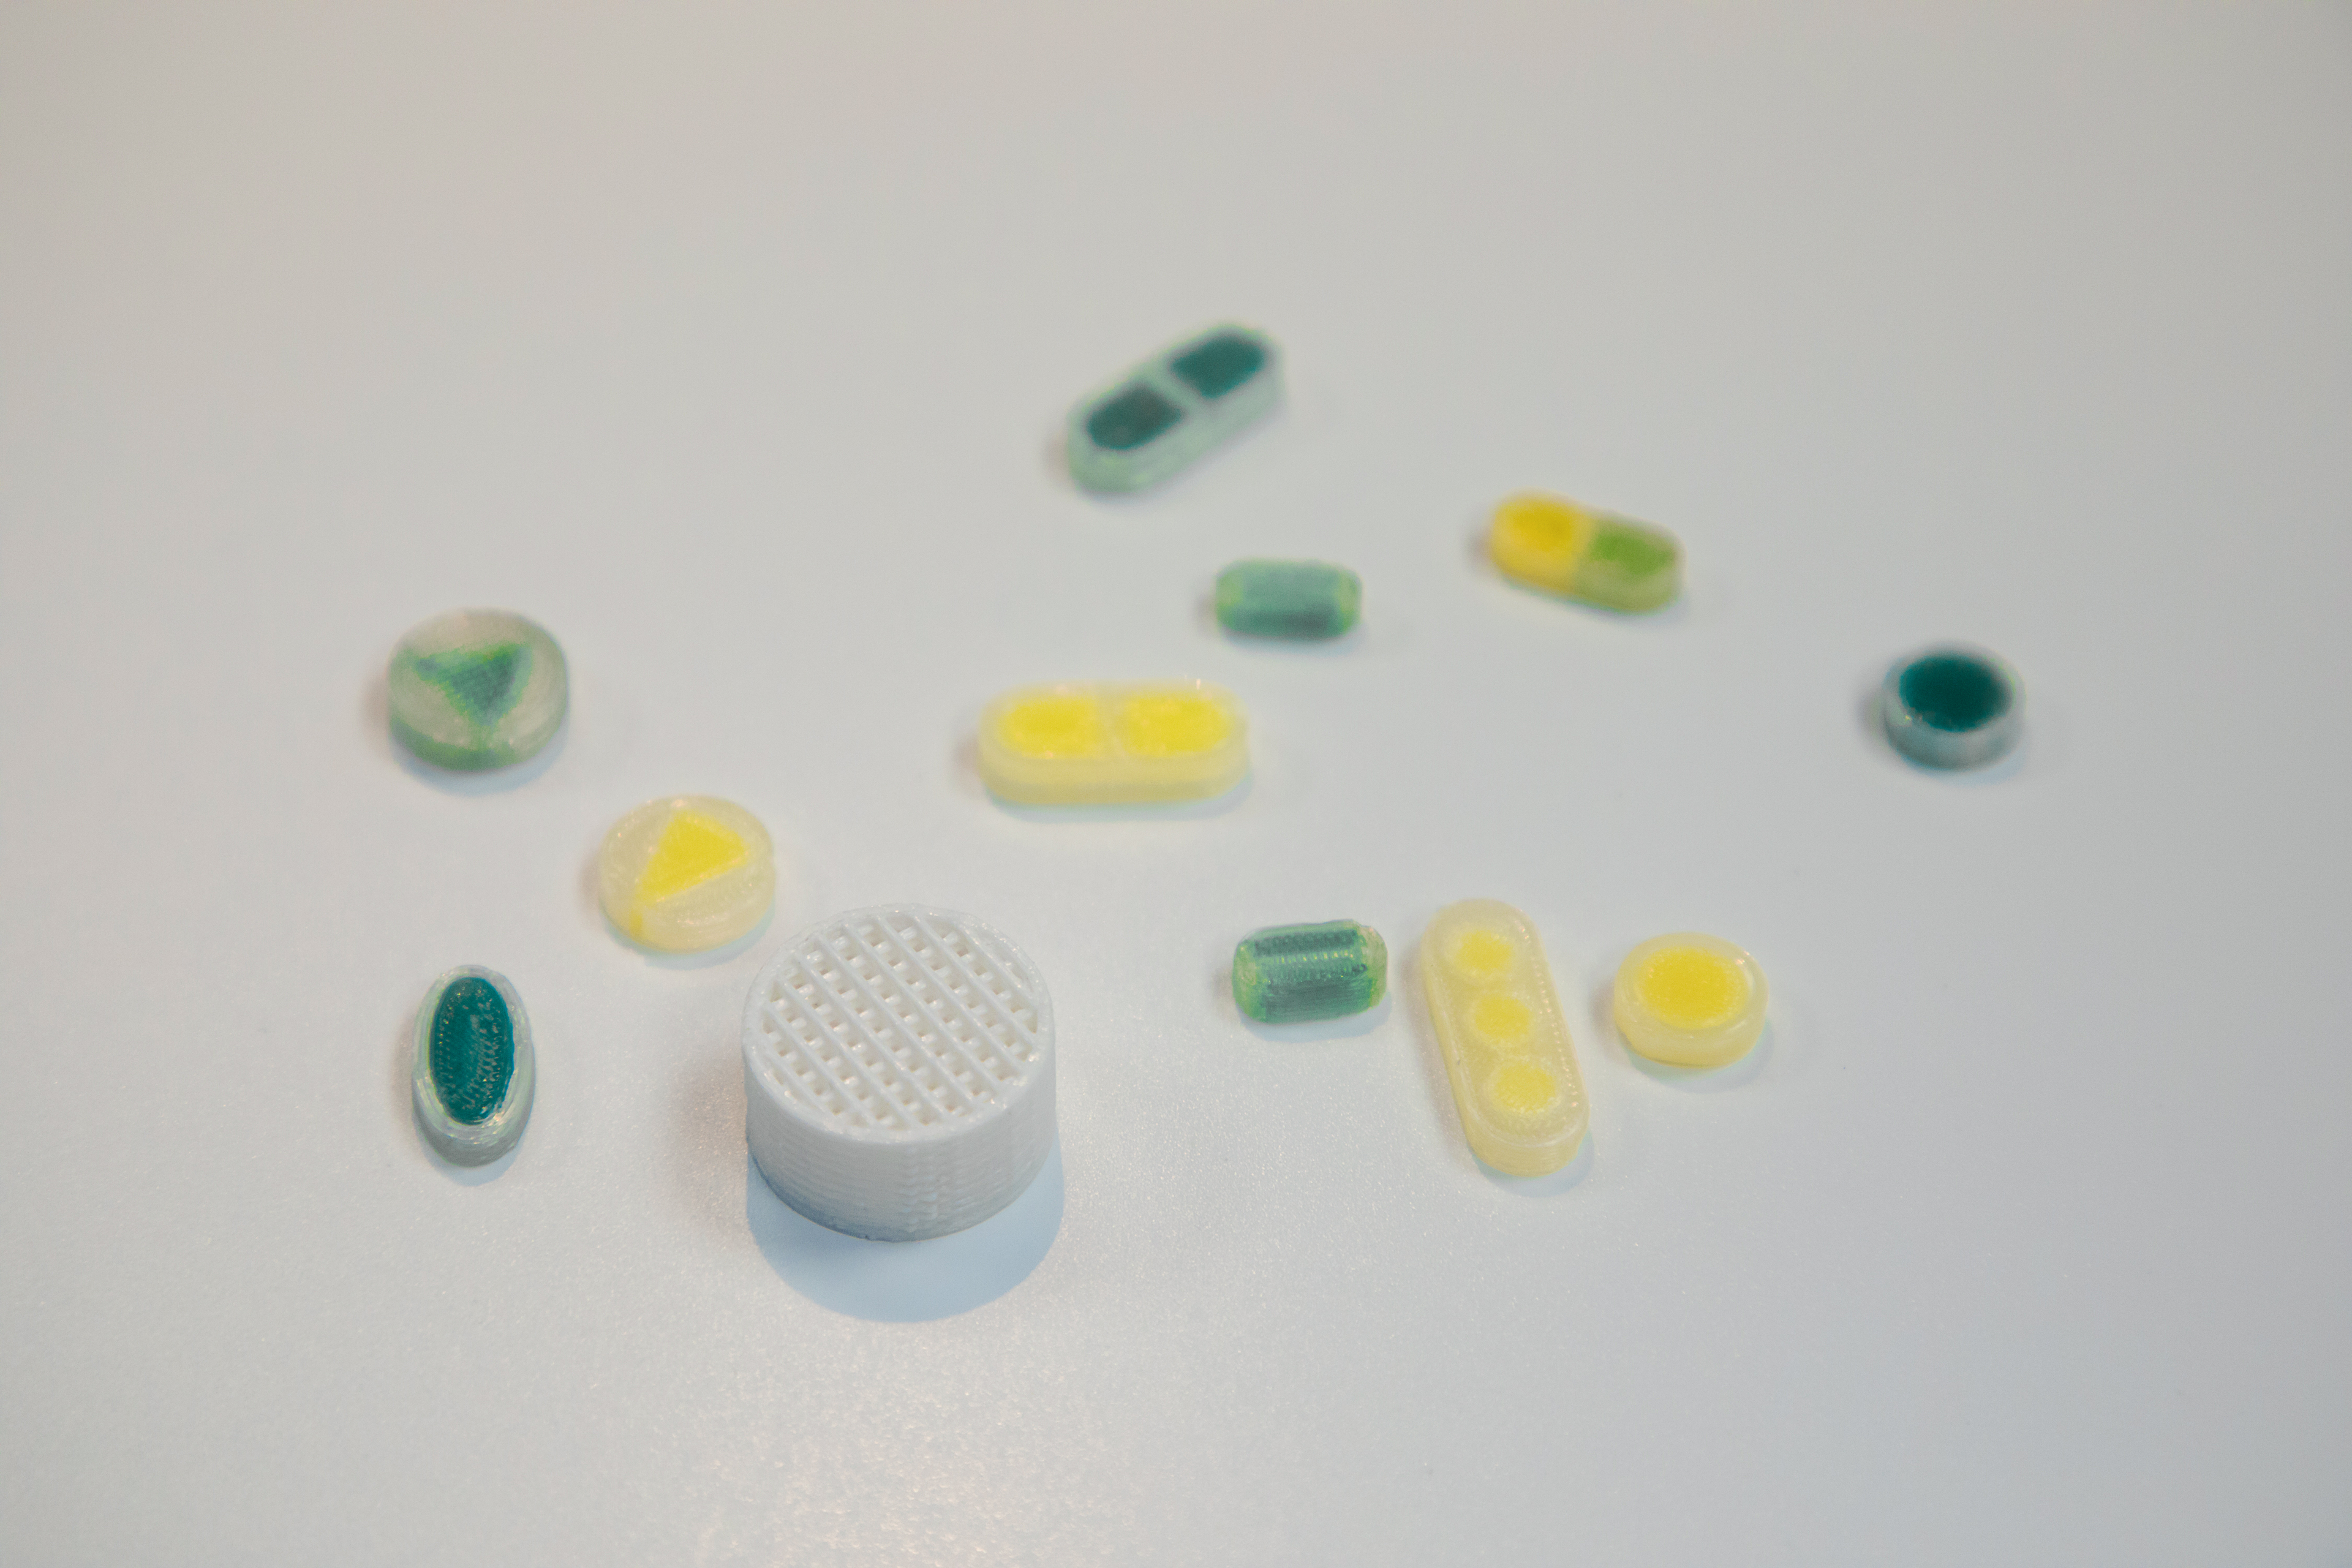 三迭纪首个3D打印药物在国内申报 与传统制剂有何区别？